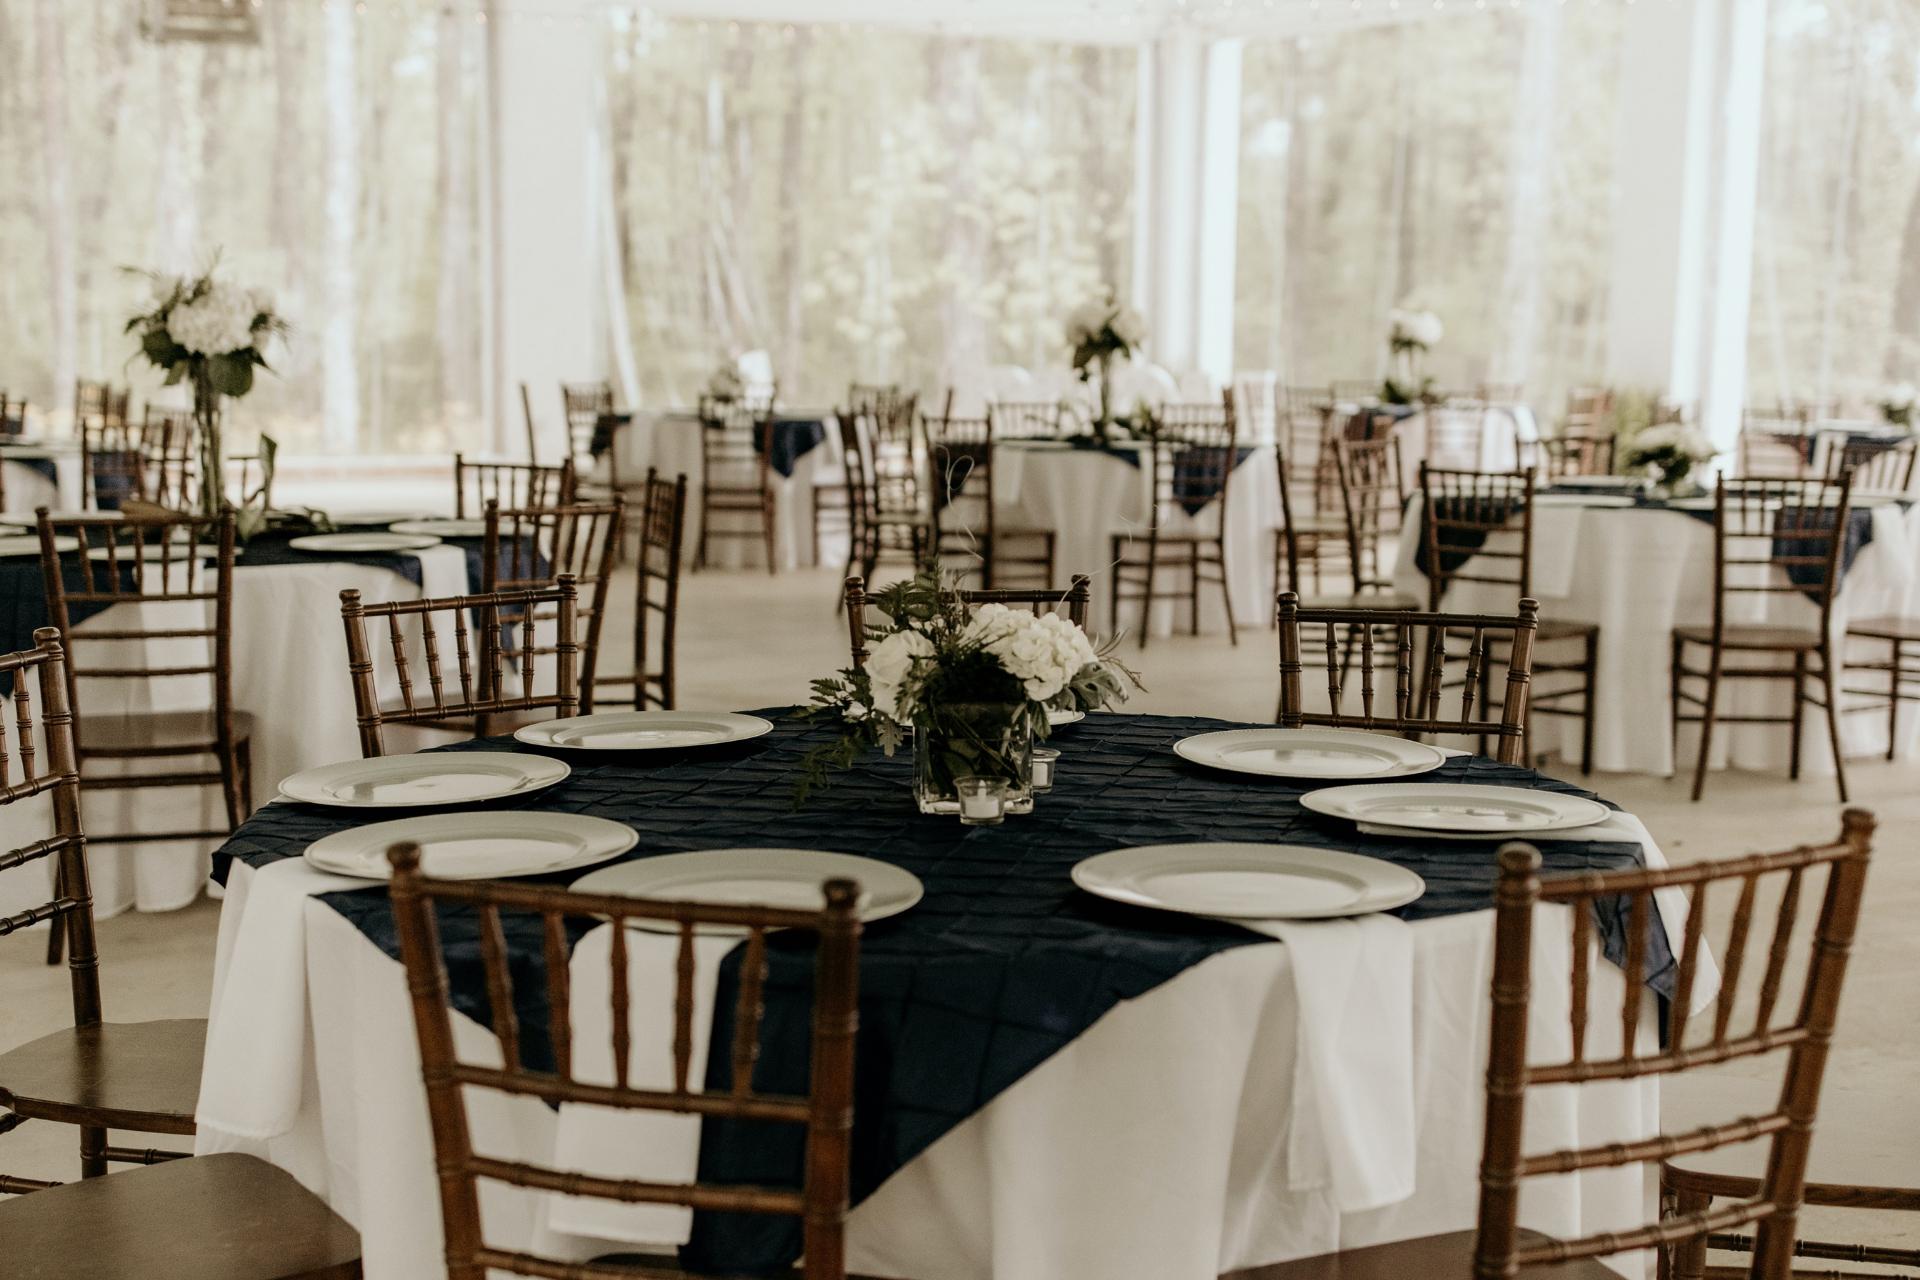 Espacio de restaurante decorado de blanco con mesas con flores en el centro